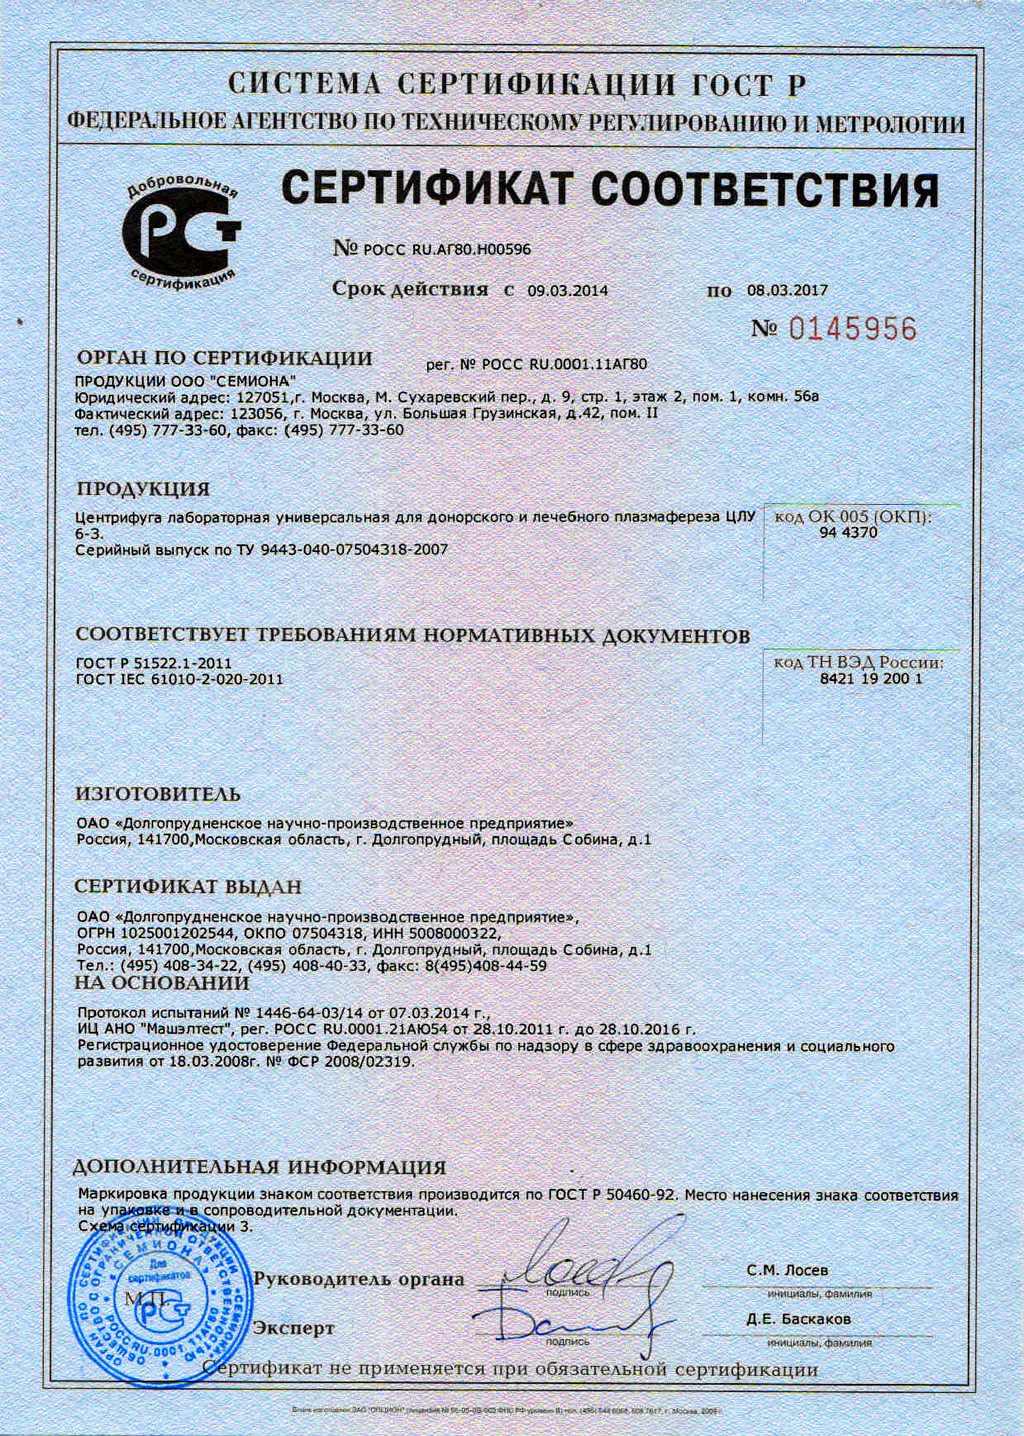 ЦЛУ 6-3 Сертификат соответствия